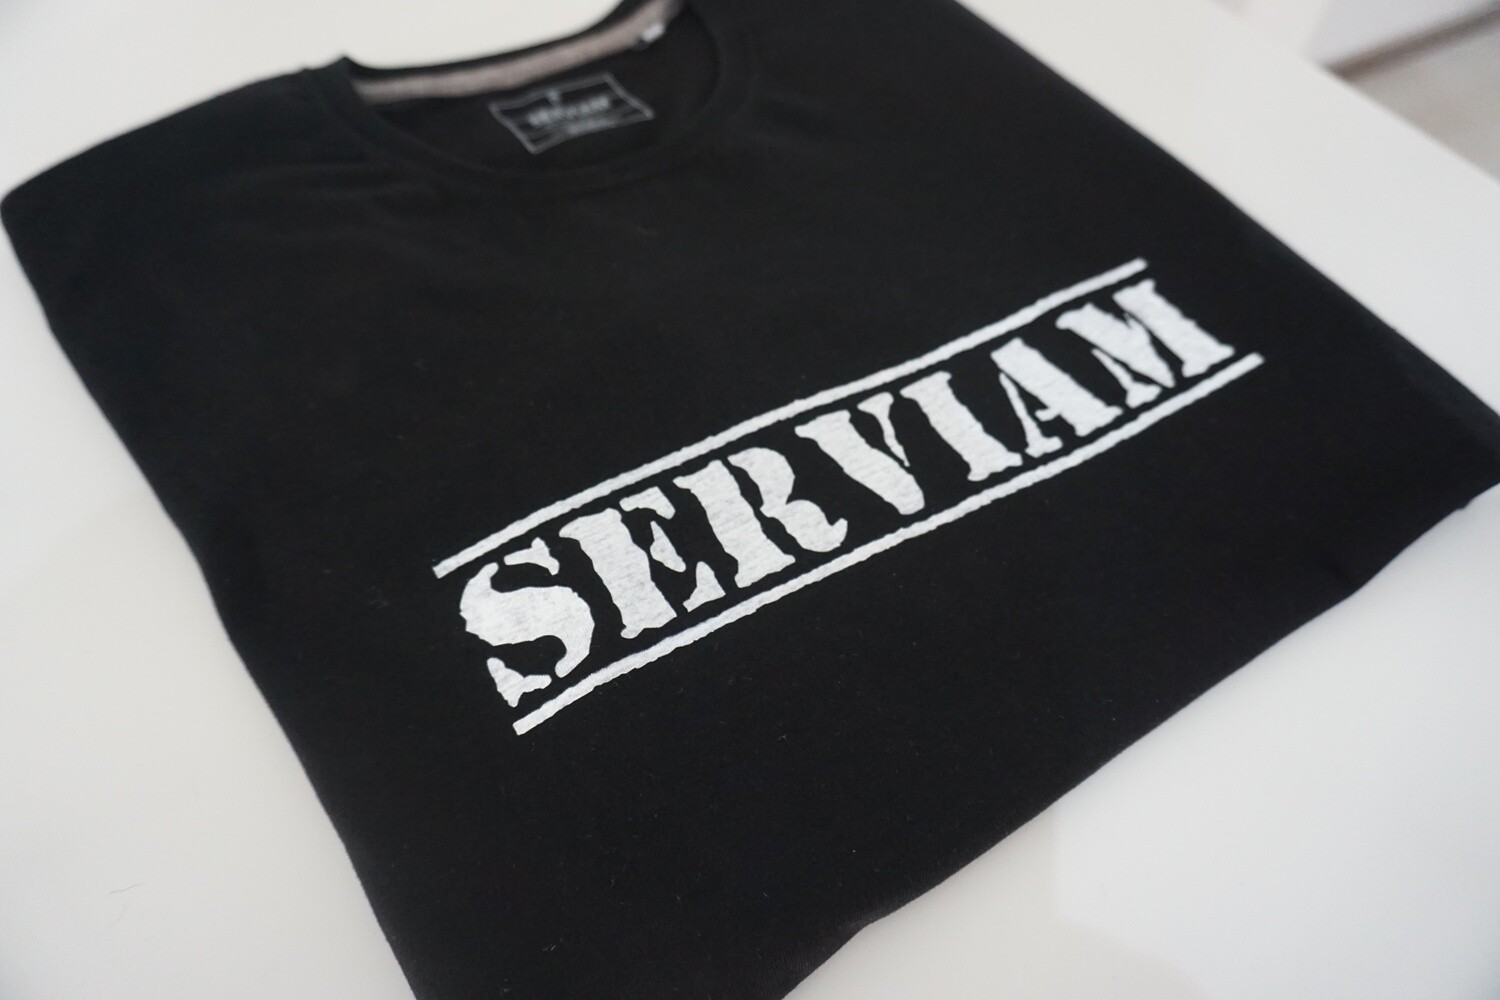 Serviam Classic T-shirt (XL)